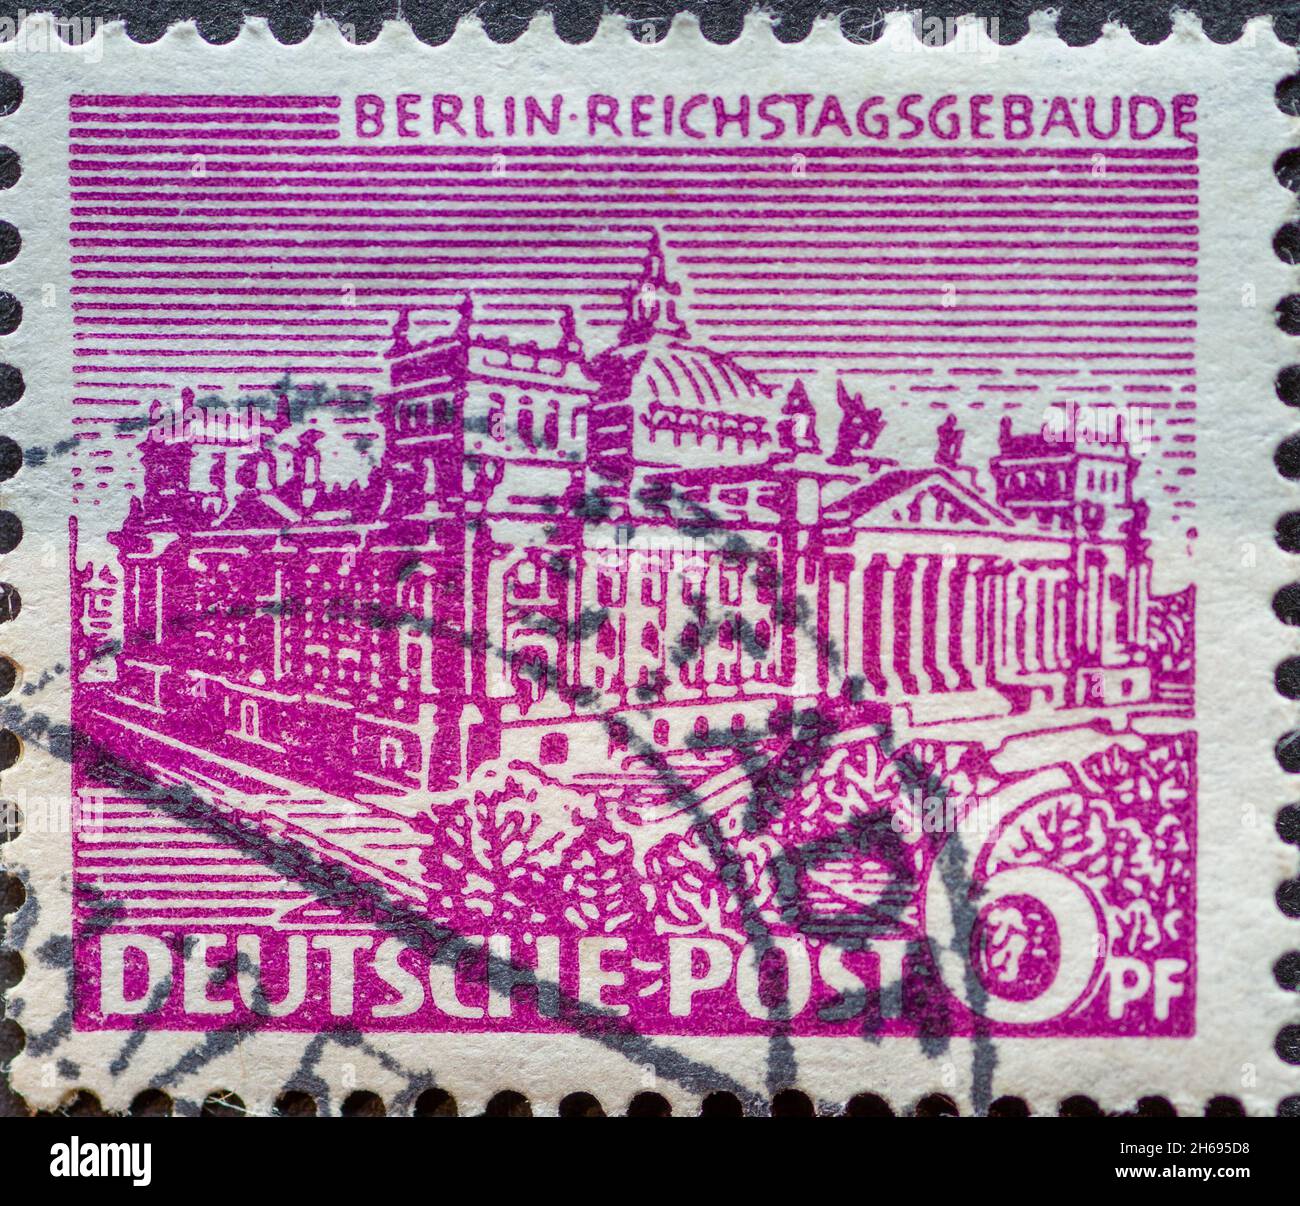 ALLEMAGNE, Berlin - VERS 1949: Timbre-poste de l'Allemagne, Berlin montrant les bâtiments de Berlin.Berlin Reichstag bâtiment en violet Banque D'Images